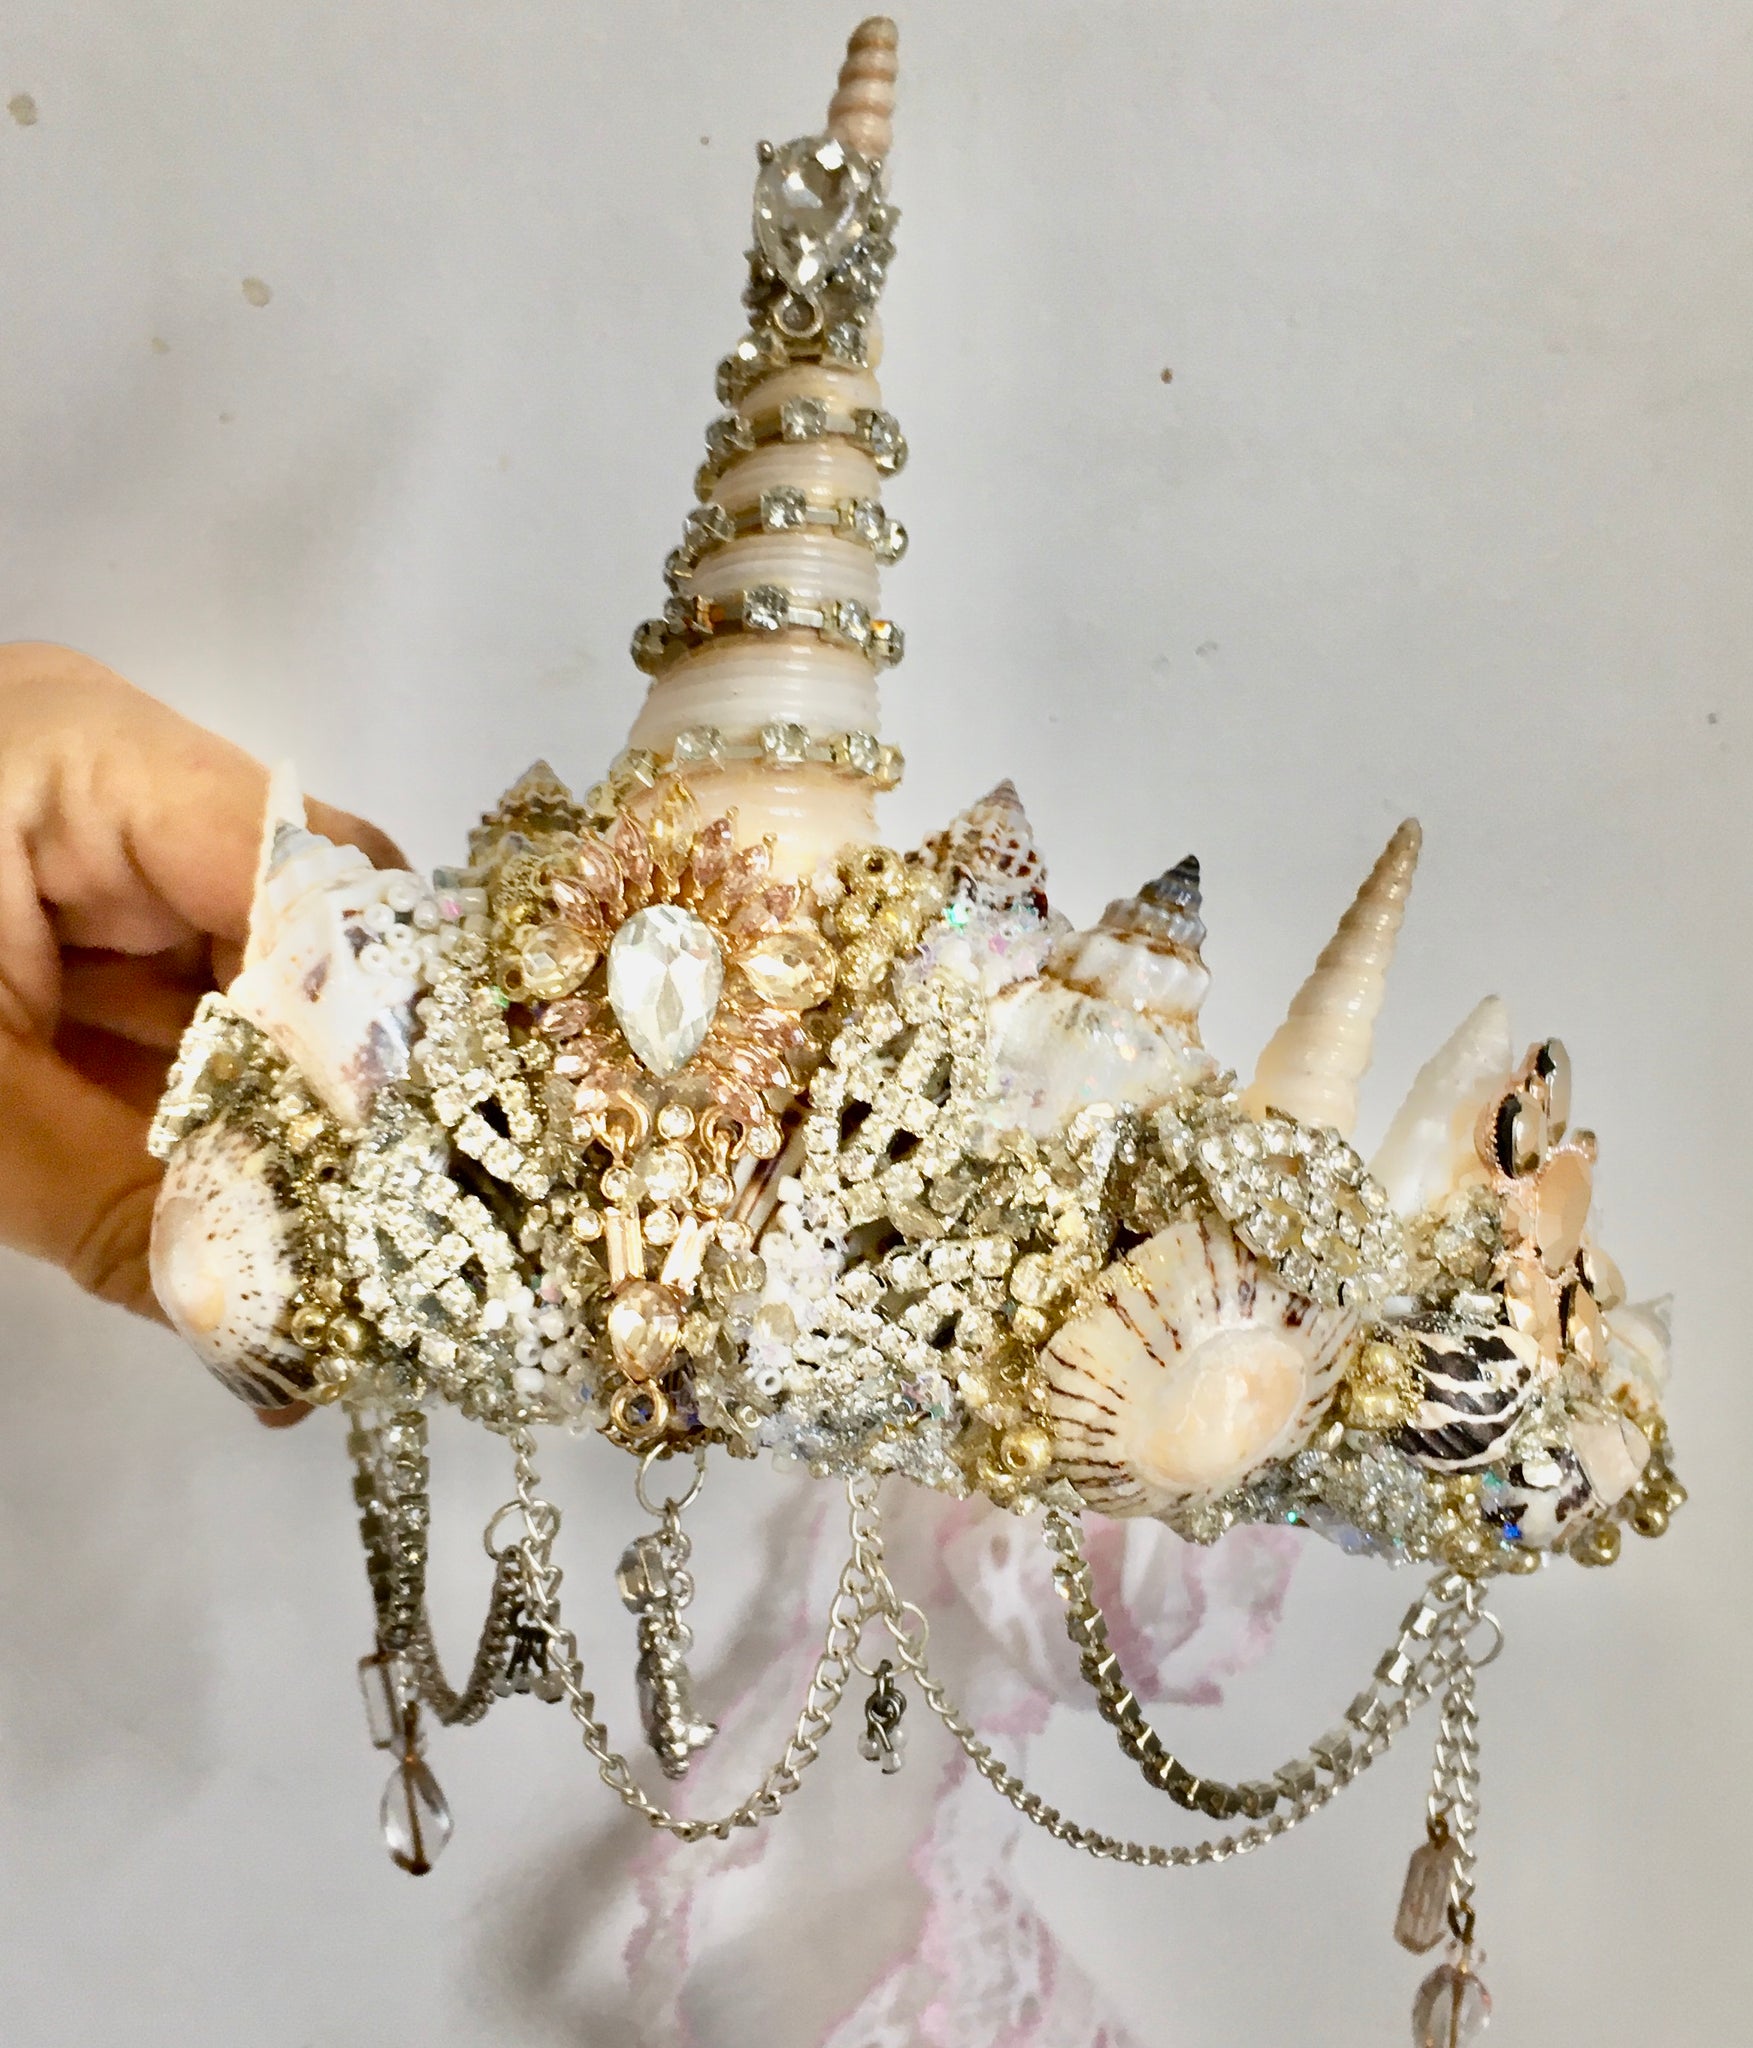 Unicorn mermaid crown ~ Classic tones